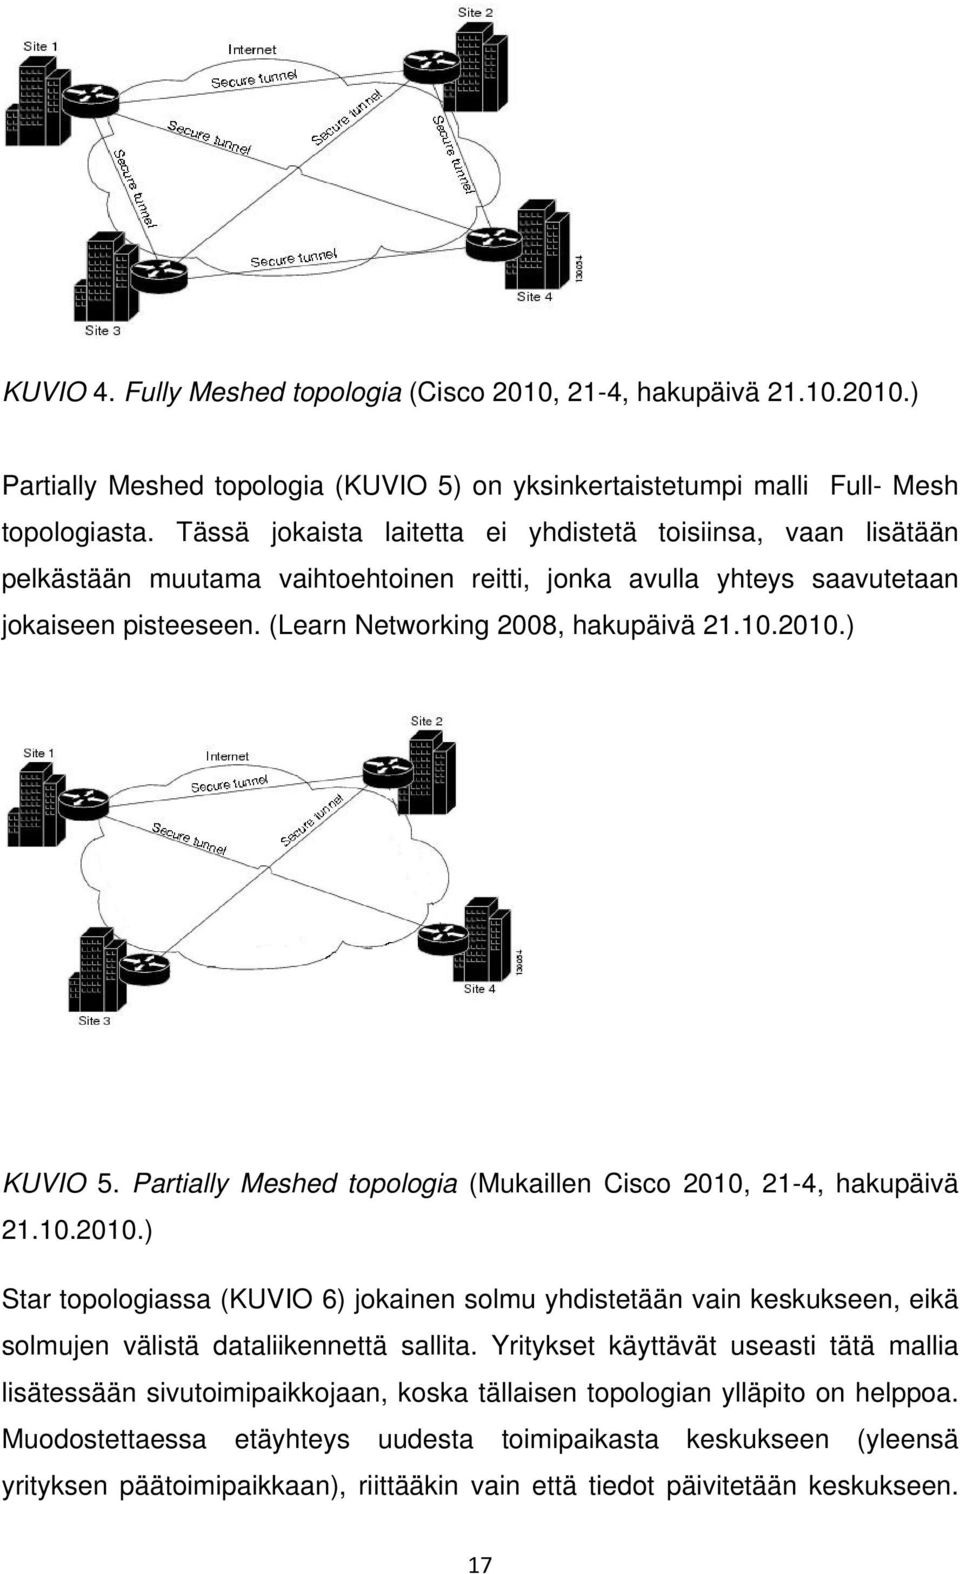 2010.) KUVIO 5. Partially Meshed topologia (Mukaillen Cisco 2010, 21-4, hakupäivä 21.10.2010.) Star topologiassa (KUVIO 6) jokainen solmu yhdistetään vain keskukseen, eikä solmujen välistä dataliikennettä sallita.